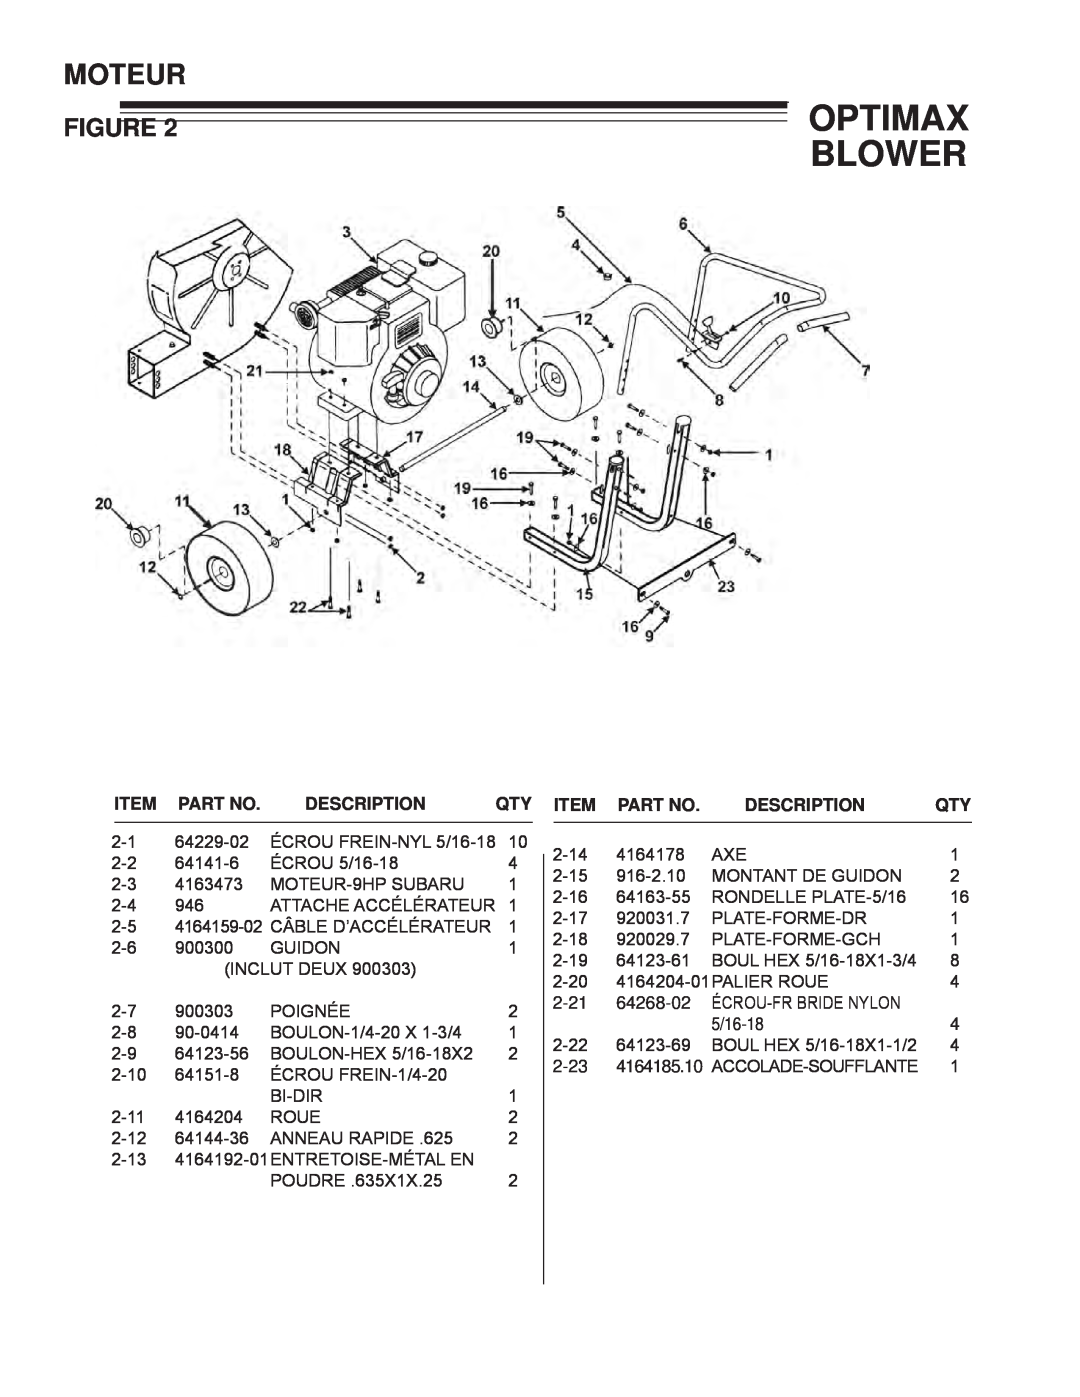 Little Wonder LB900-00-01 technical manual Moteur, Optimax Blower, Description 